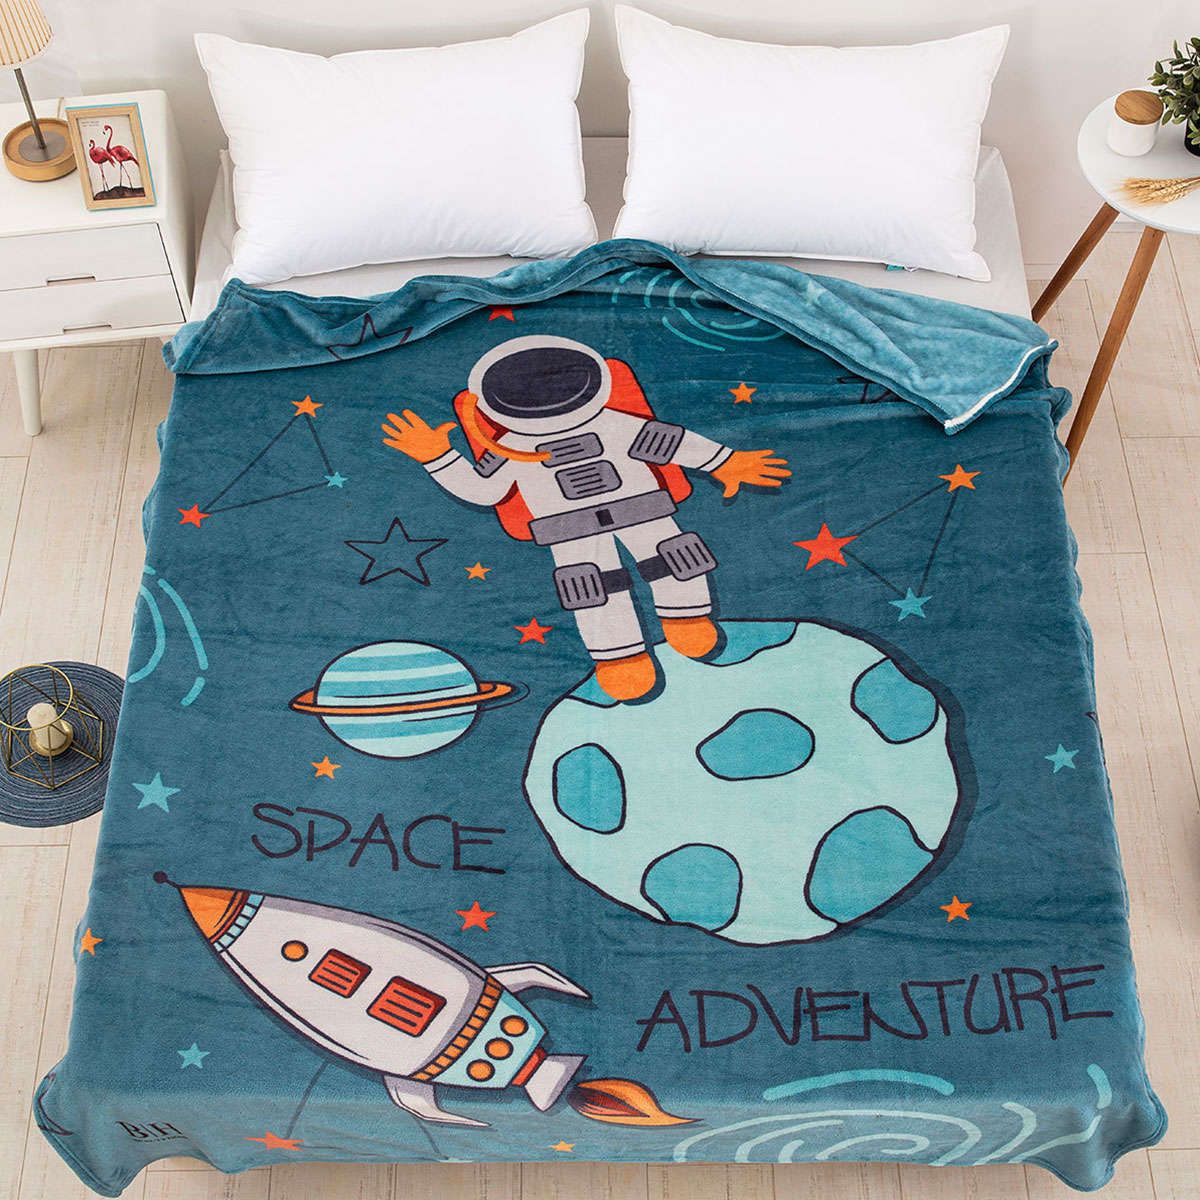 Παιδική κουβέρτα fleece μονή Space Art 6167 blue beauty home